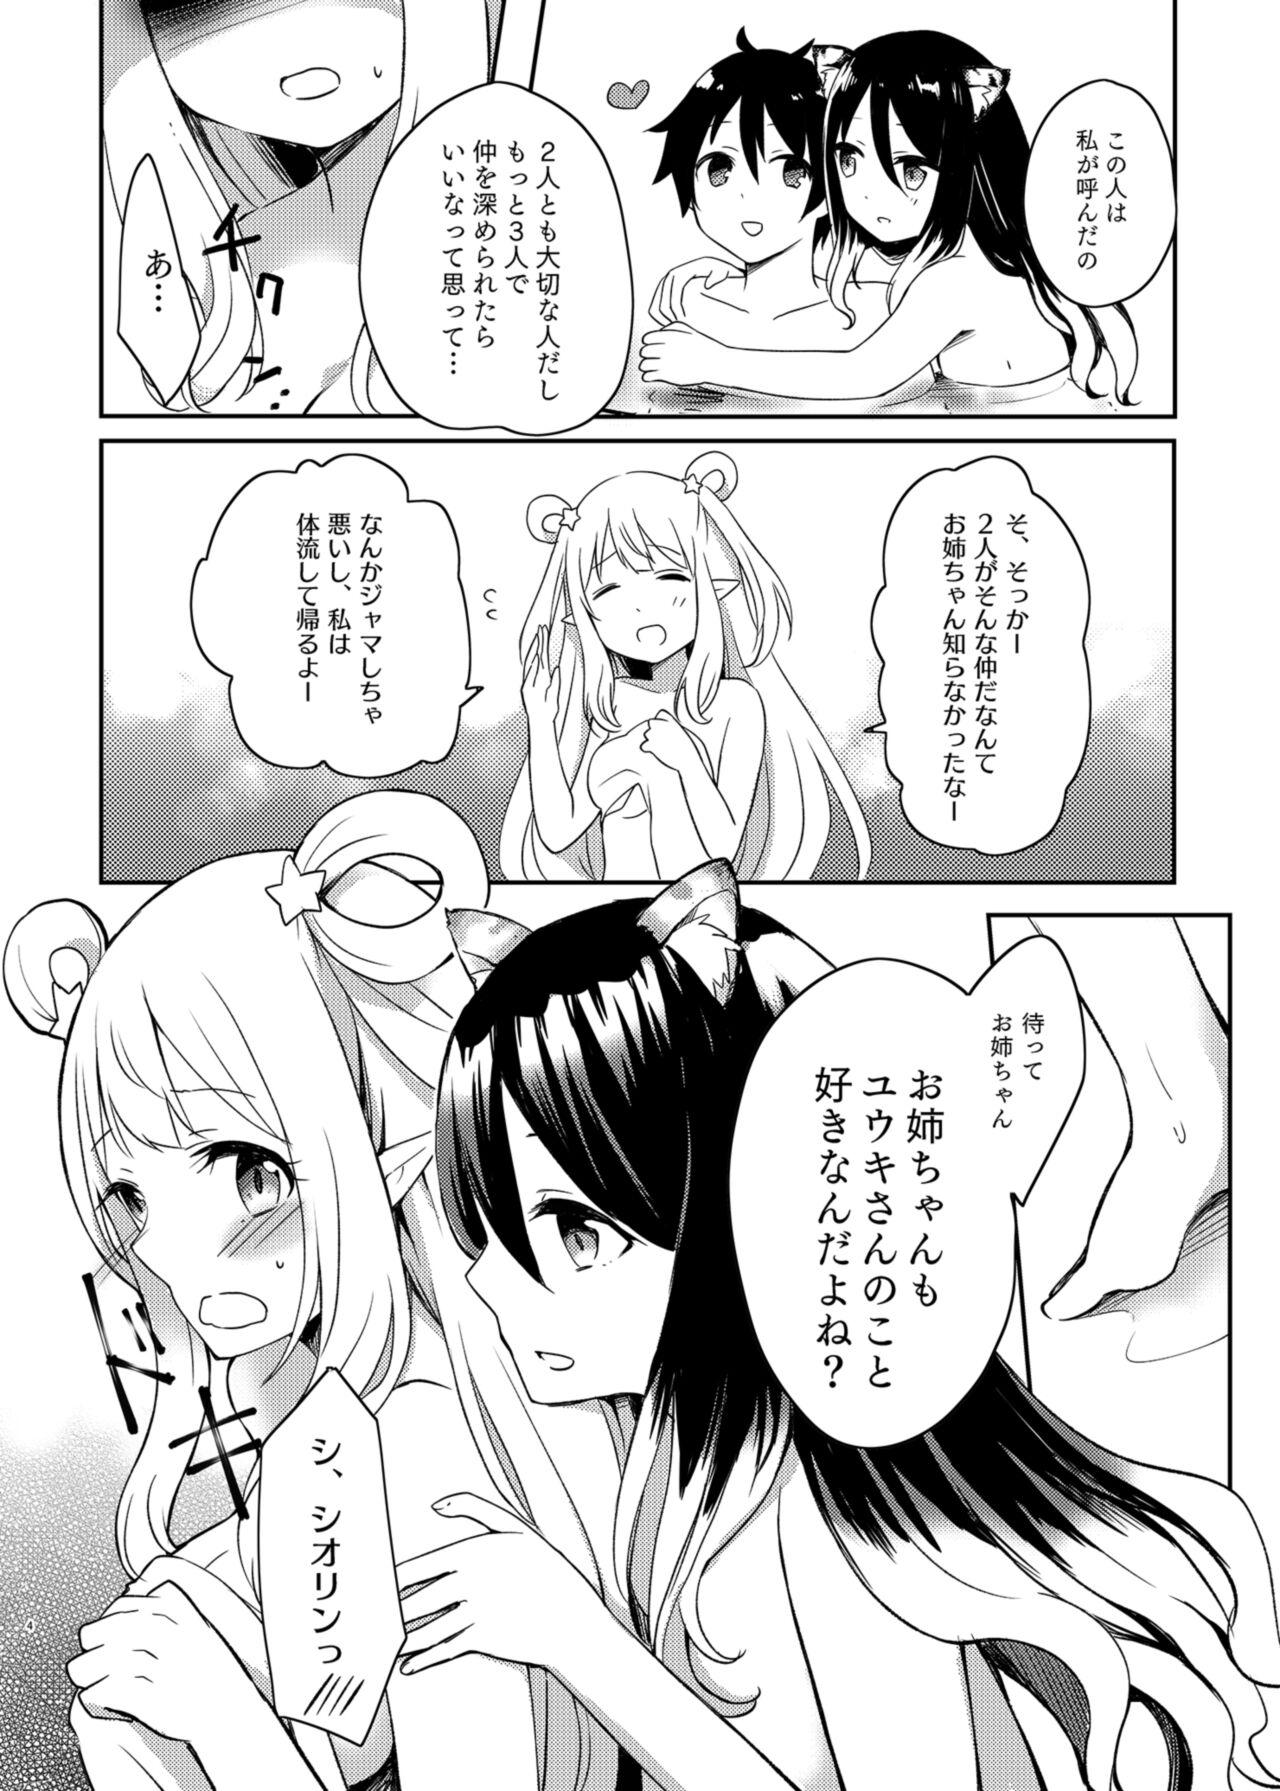 Fuck Porn Hatsune to Shiori no Yukemuri Daisakusen - Princess connect Sucking Cock - Page 4